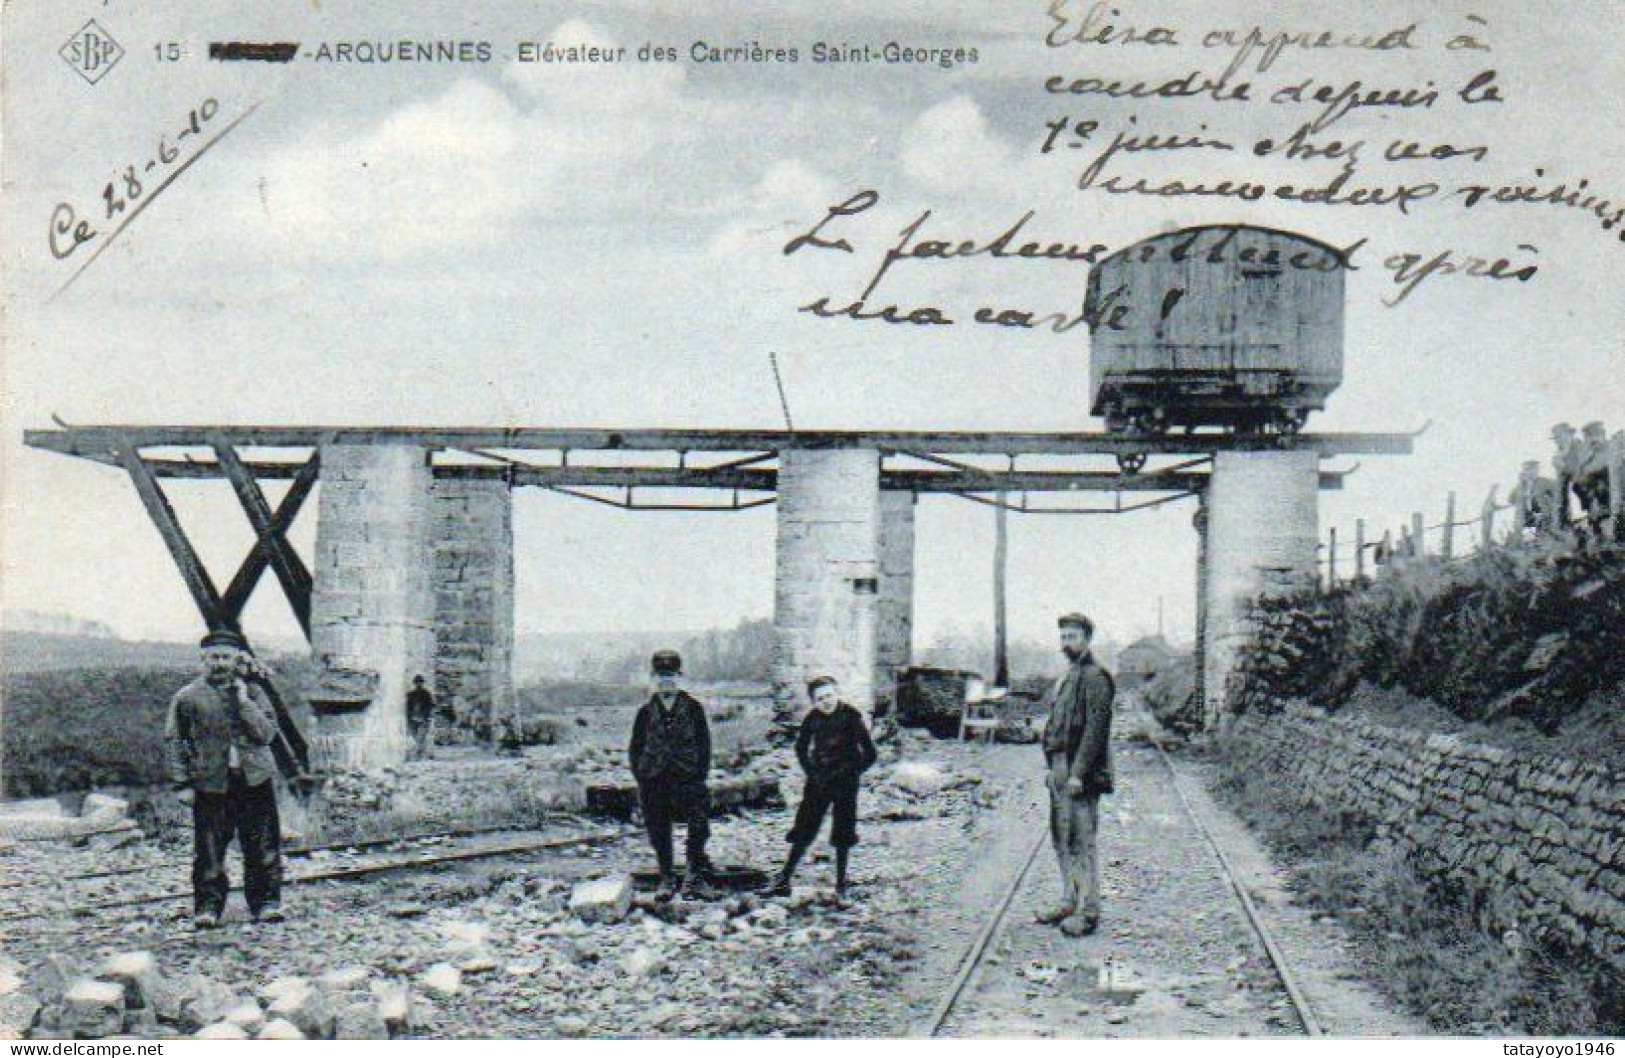 Arquennes Elévateur Des Carrieres Saint-Georges  Carte SBP Bleue Animée Voyagé En 1910 - Seneffe